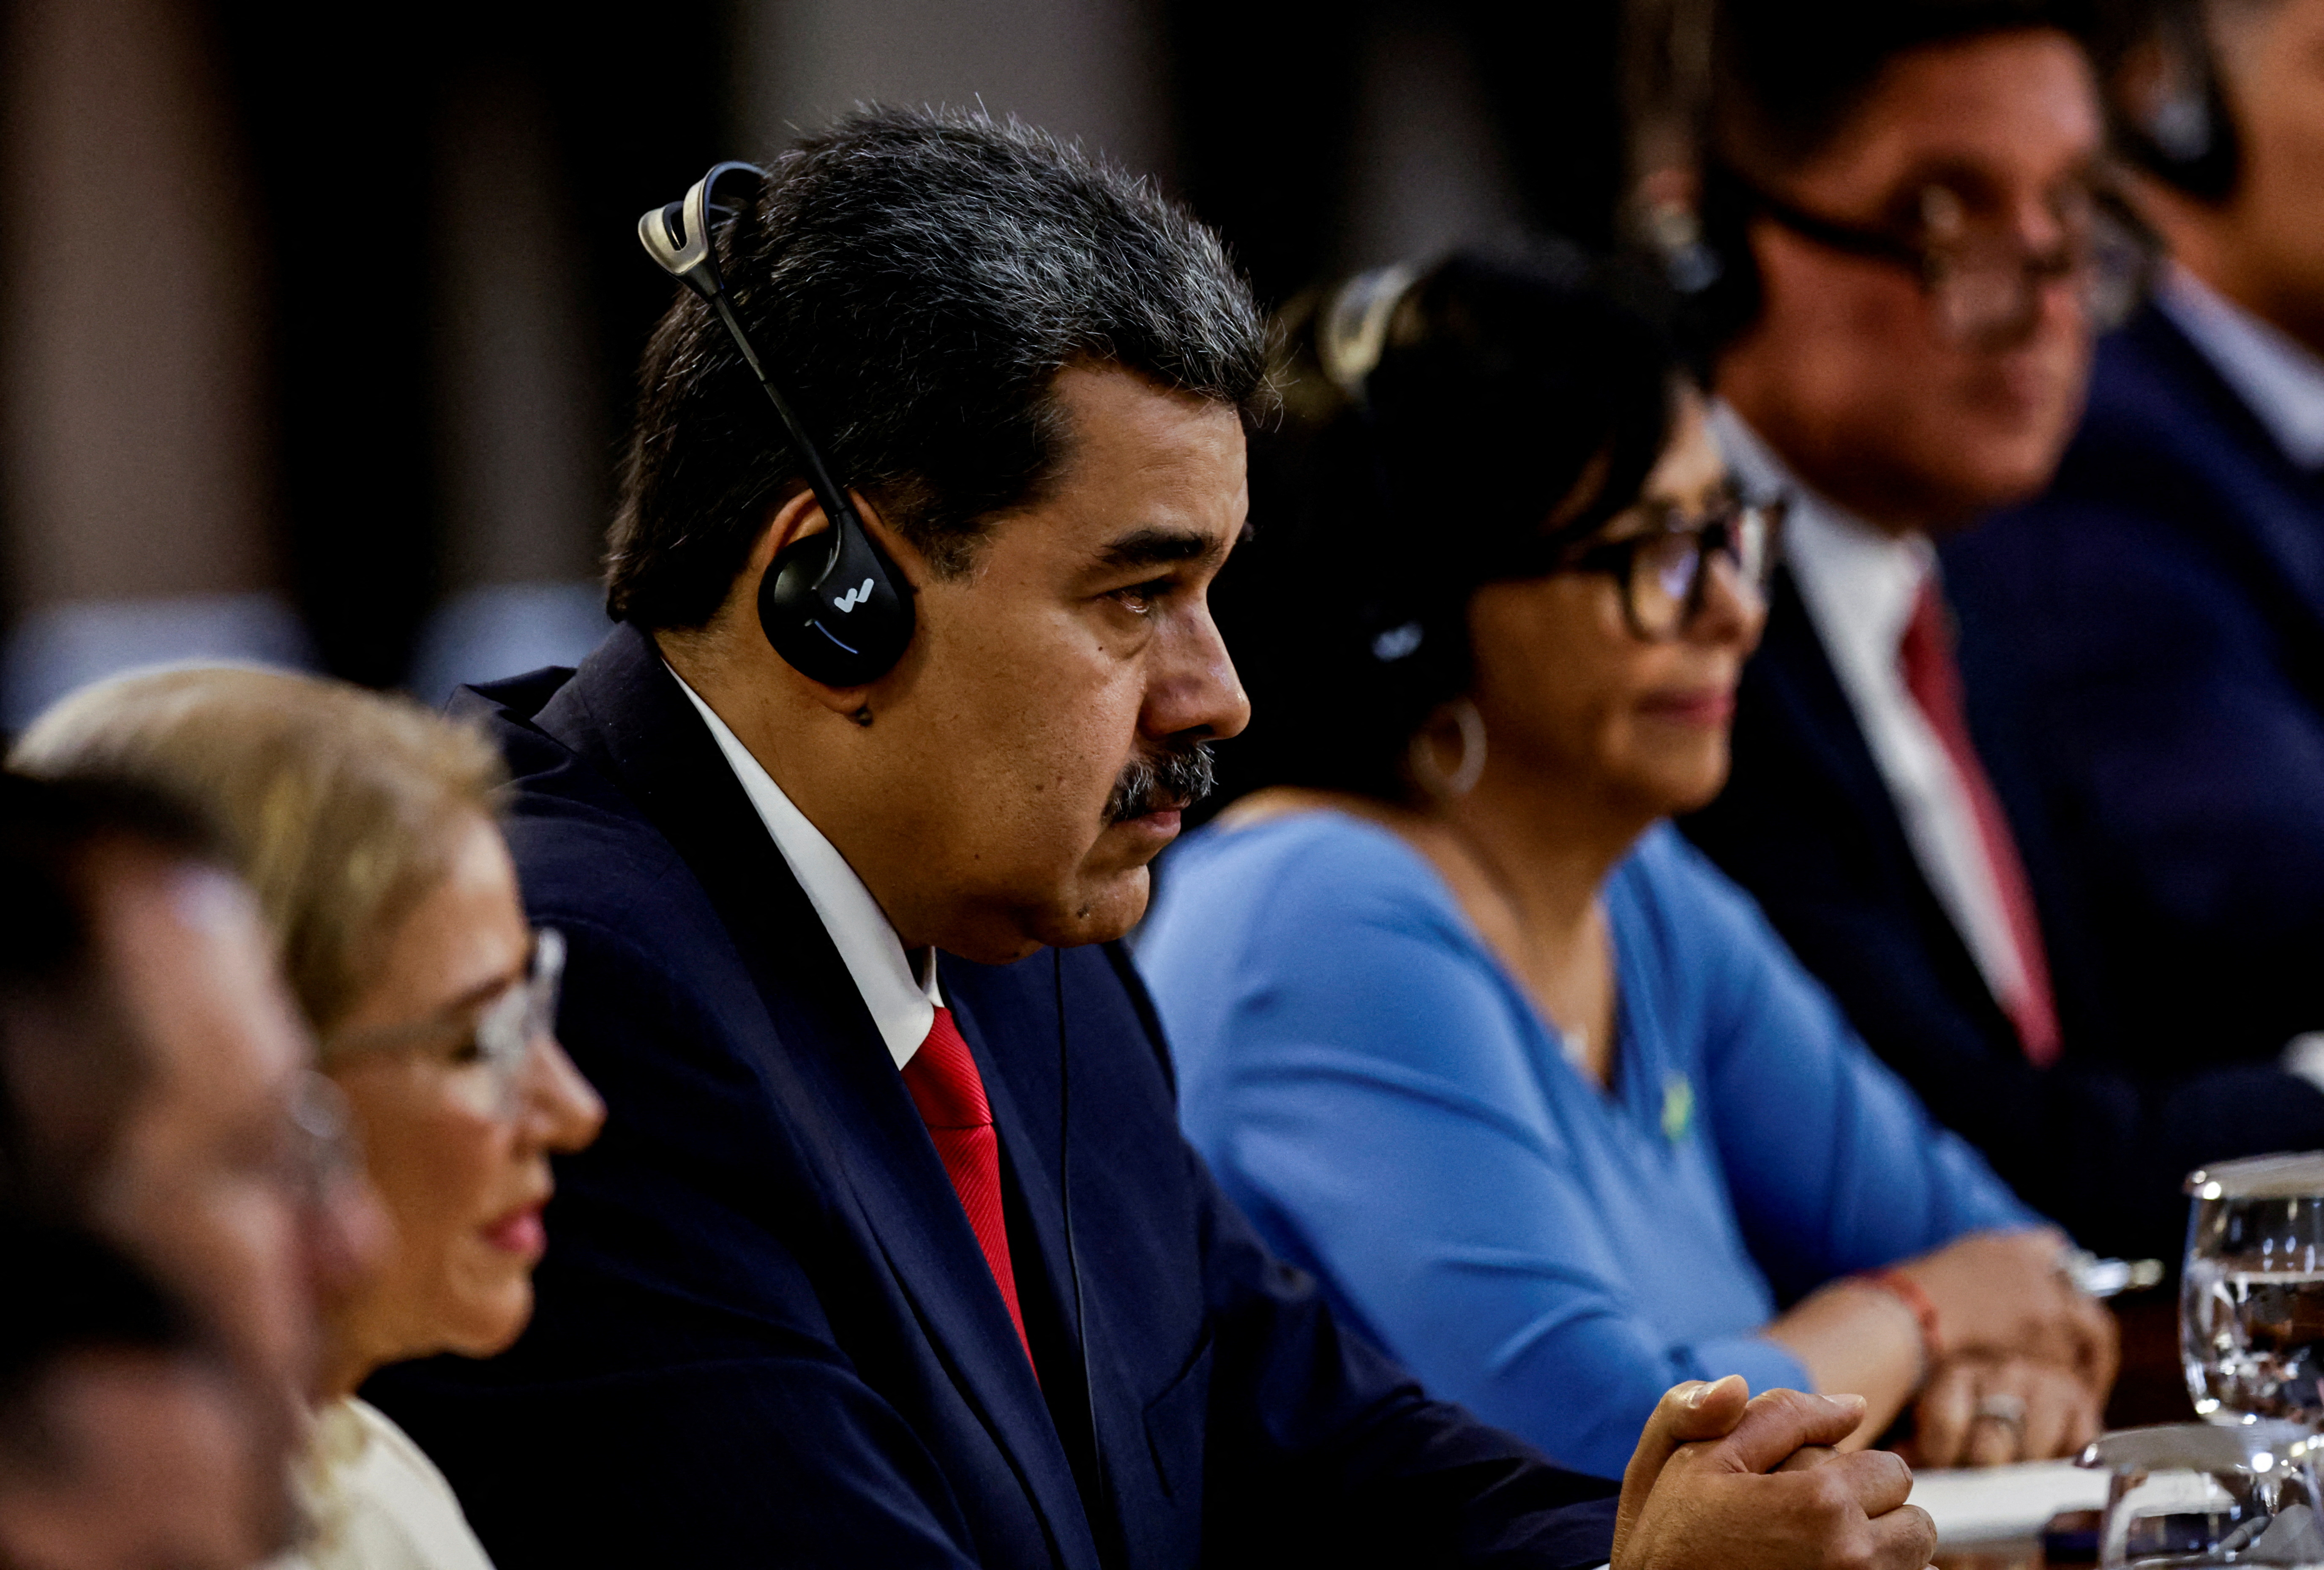 El dictador Maduro, durante la cumbre de presidentes sudamericanos organizada por Lula en Brasilia (REUTERS/Ueslei Marcelino)